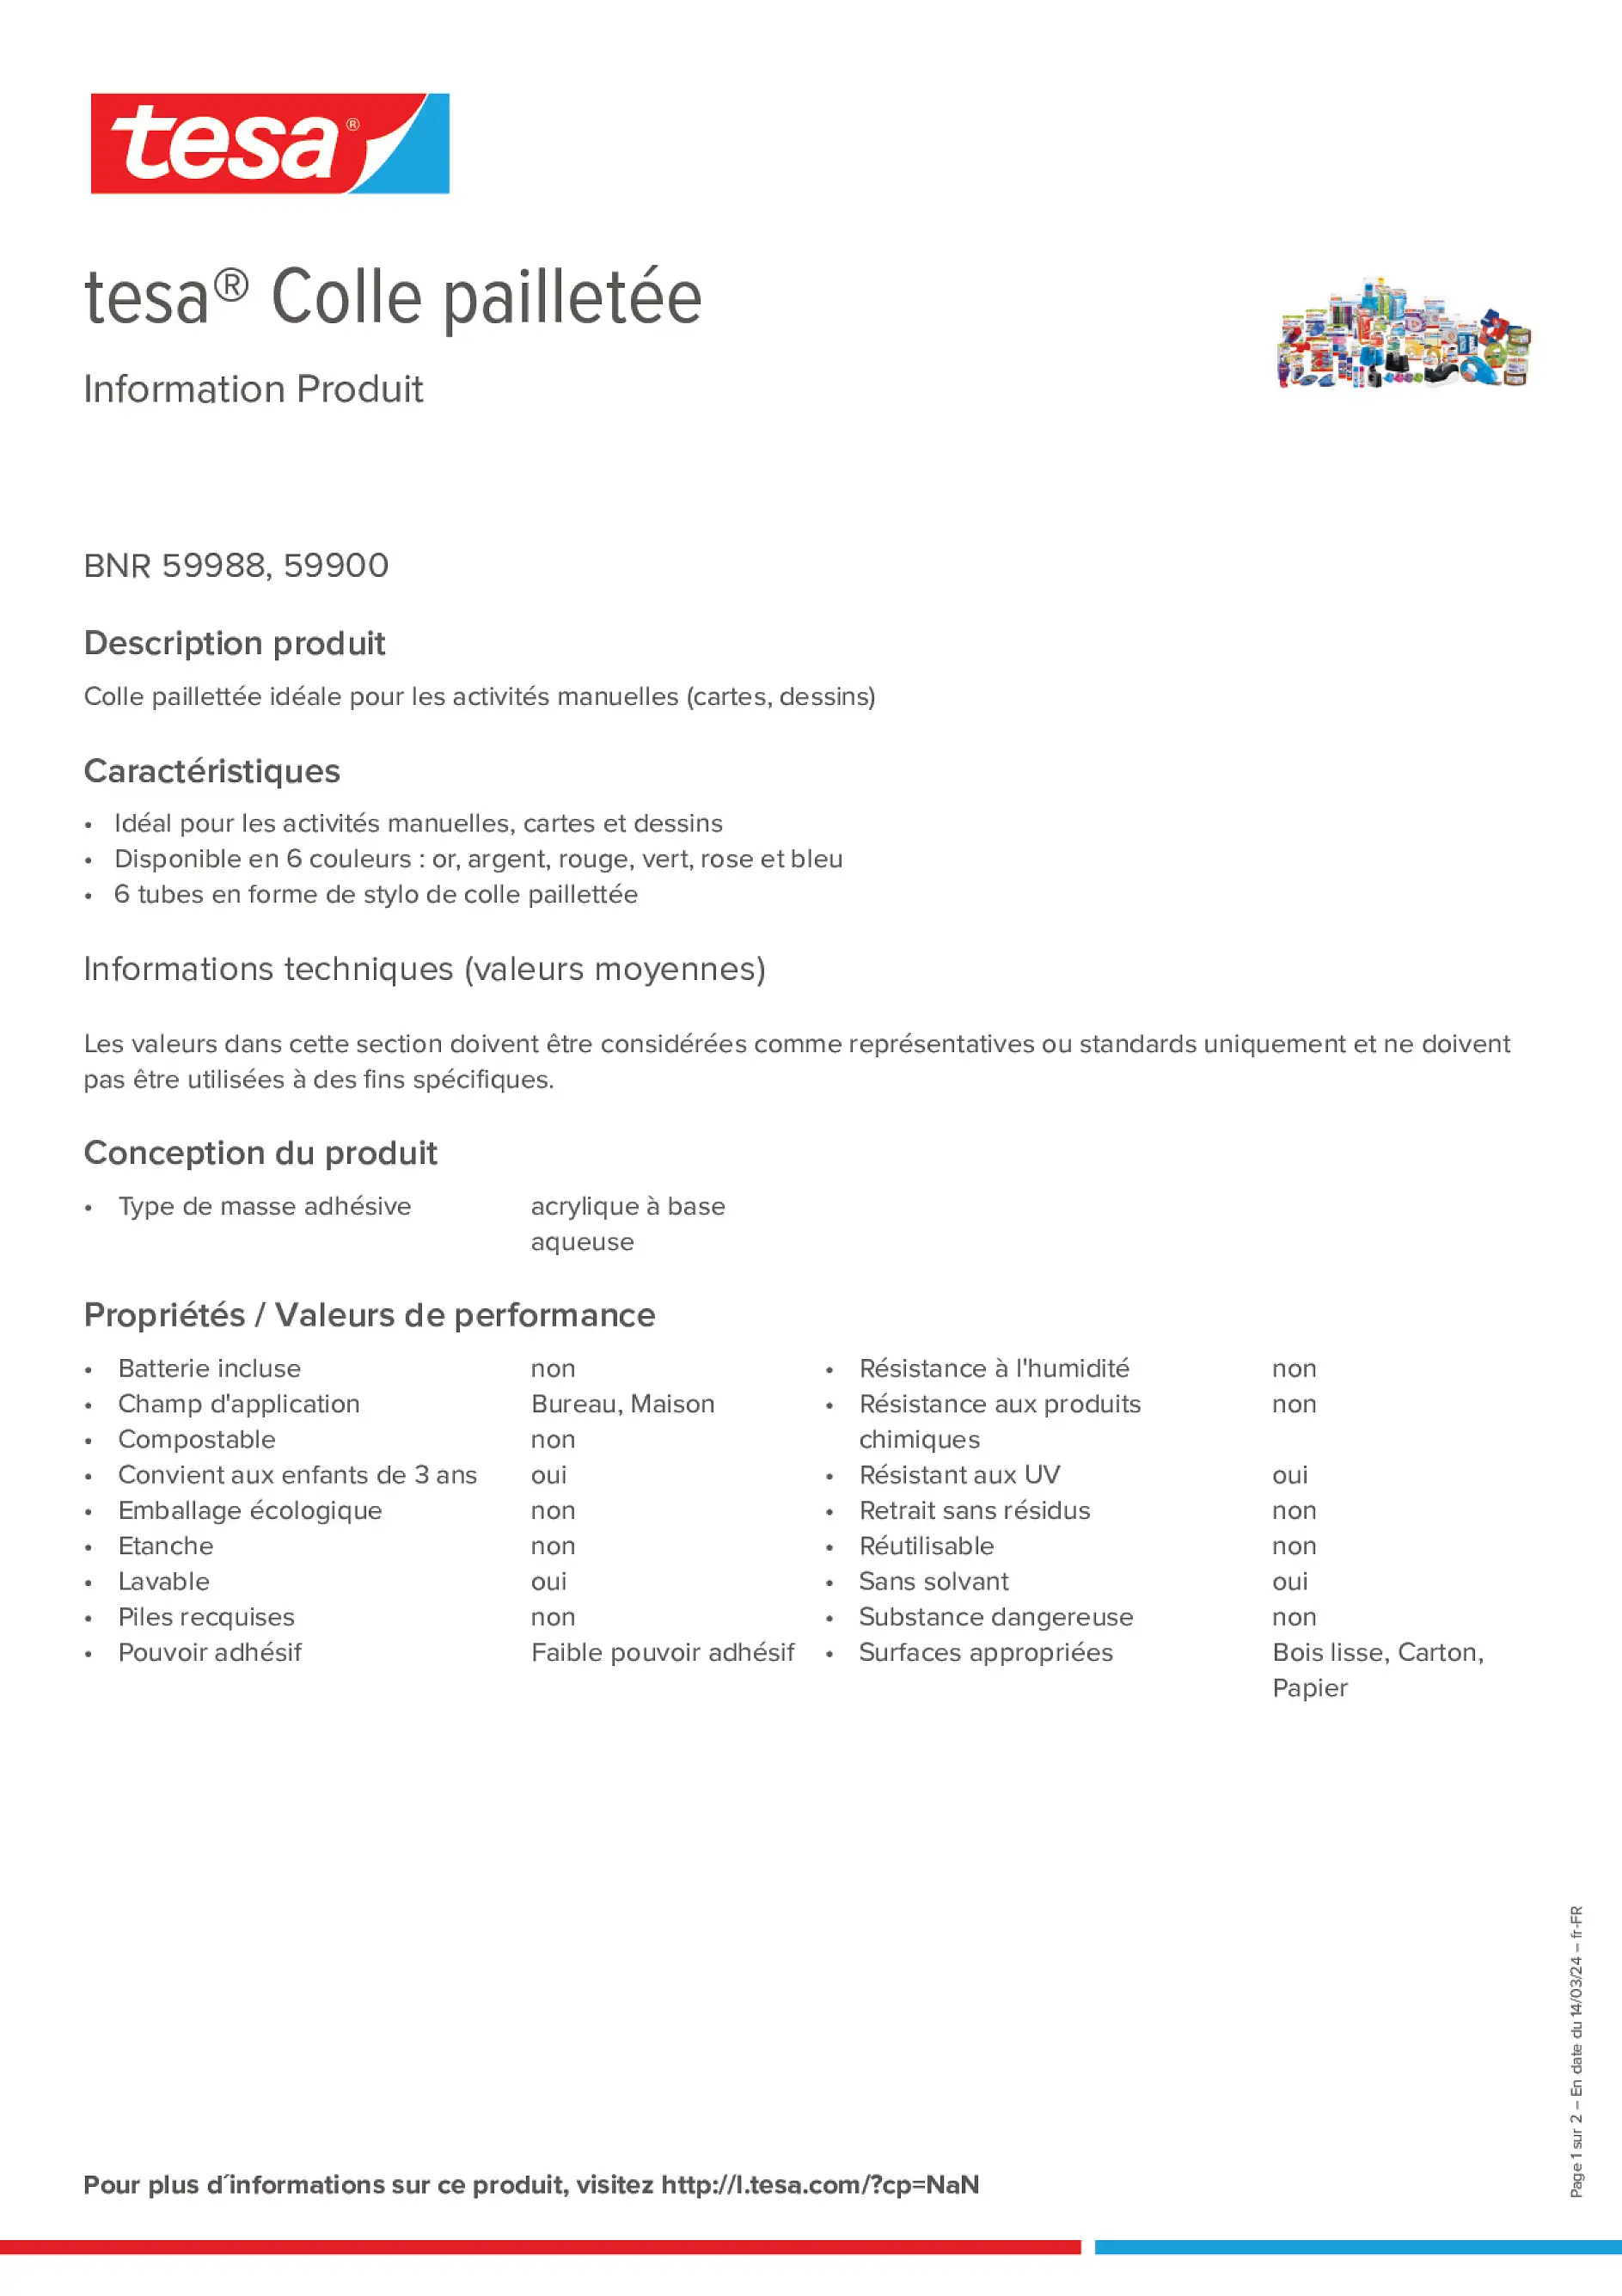 Product information_tesa® 59988_fr-FR